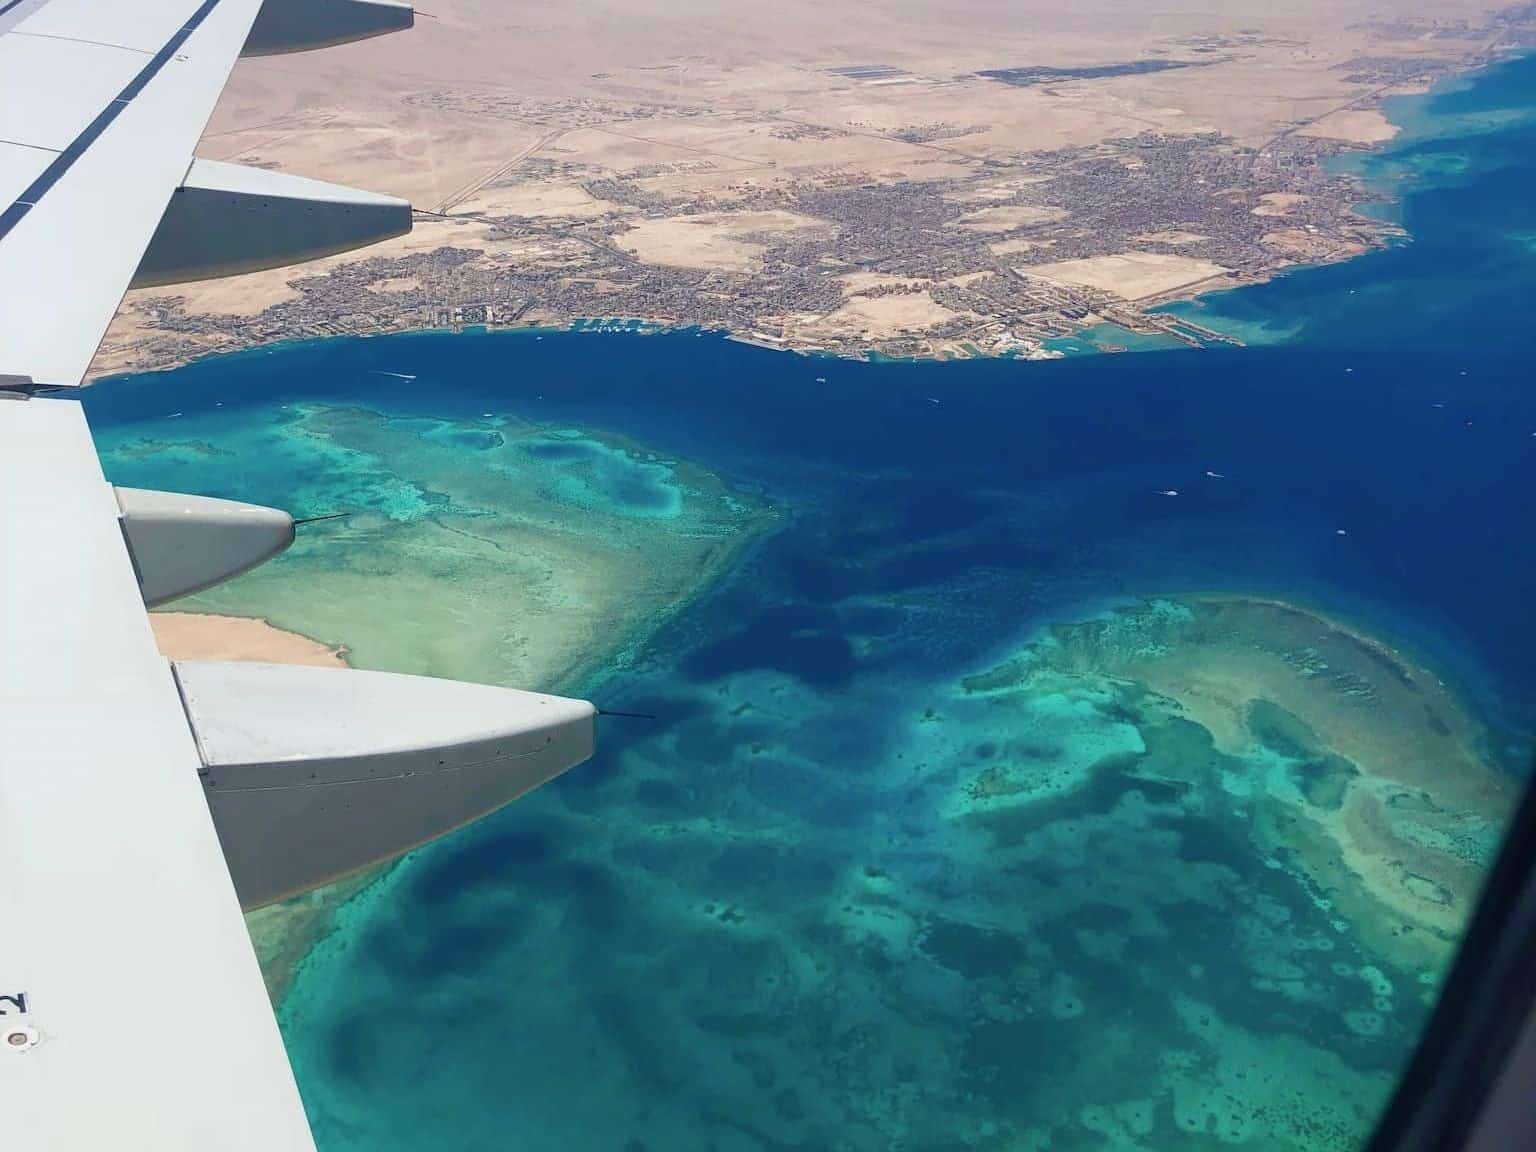 Aproximación a Hurghada: después del aterrizaje, existe el riesgo de confusión y confusión. Foto: Sascha Tegtmeyer